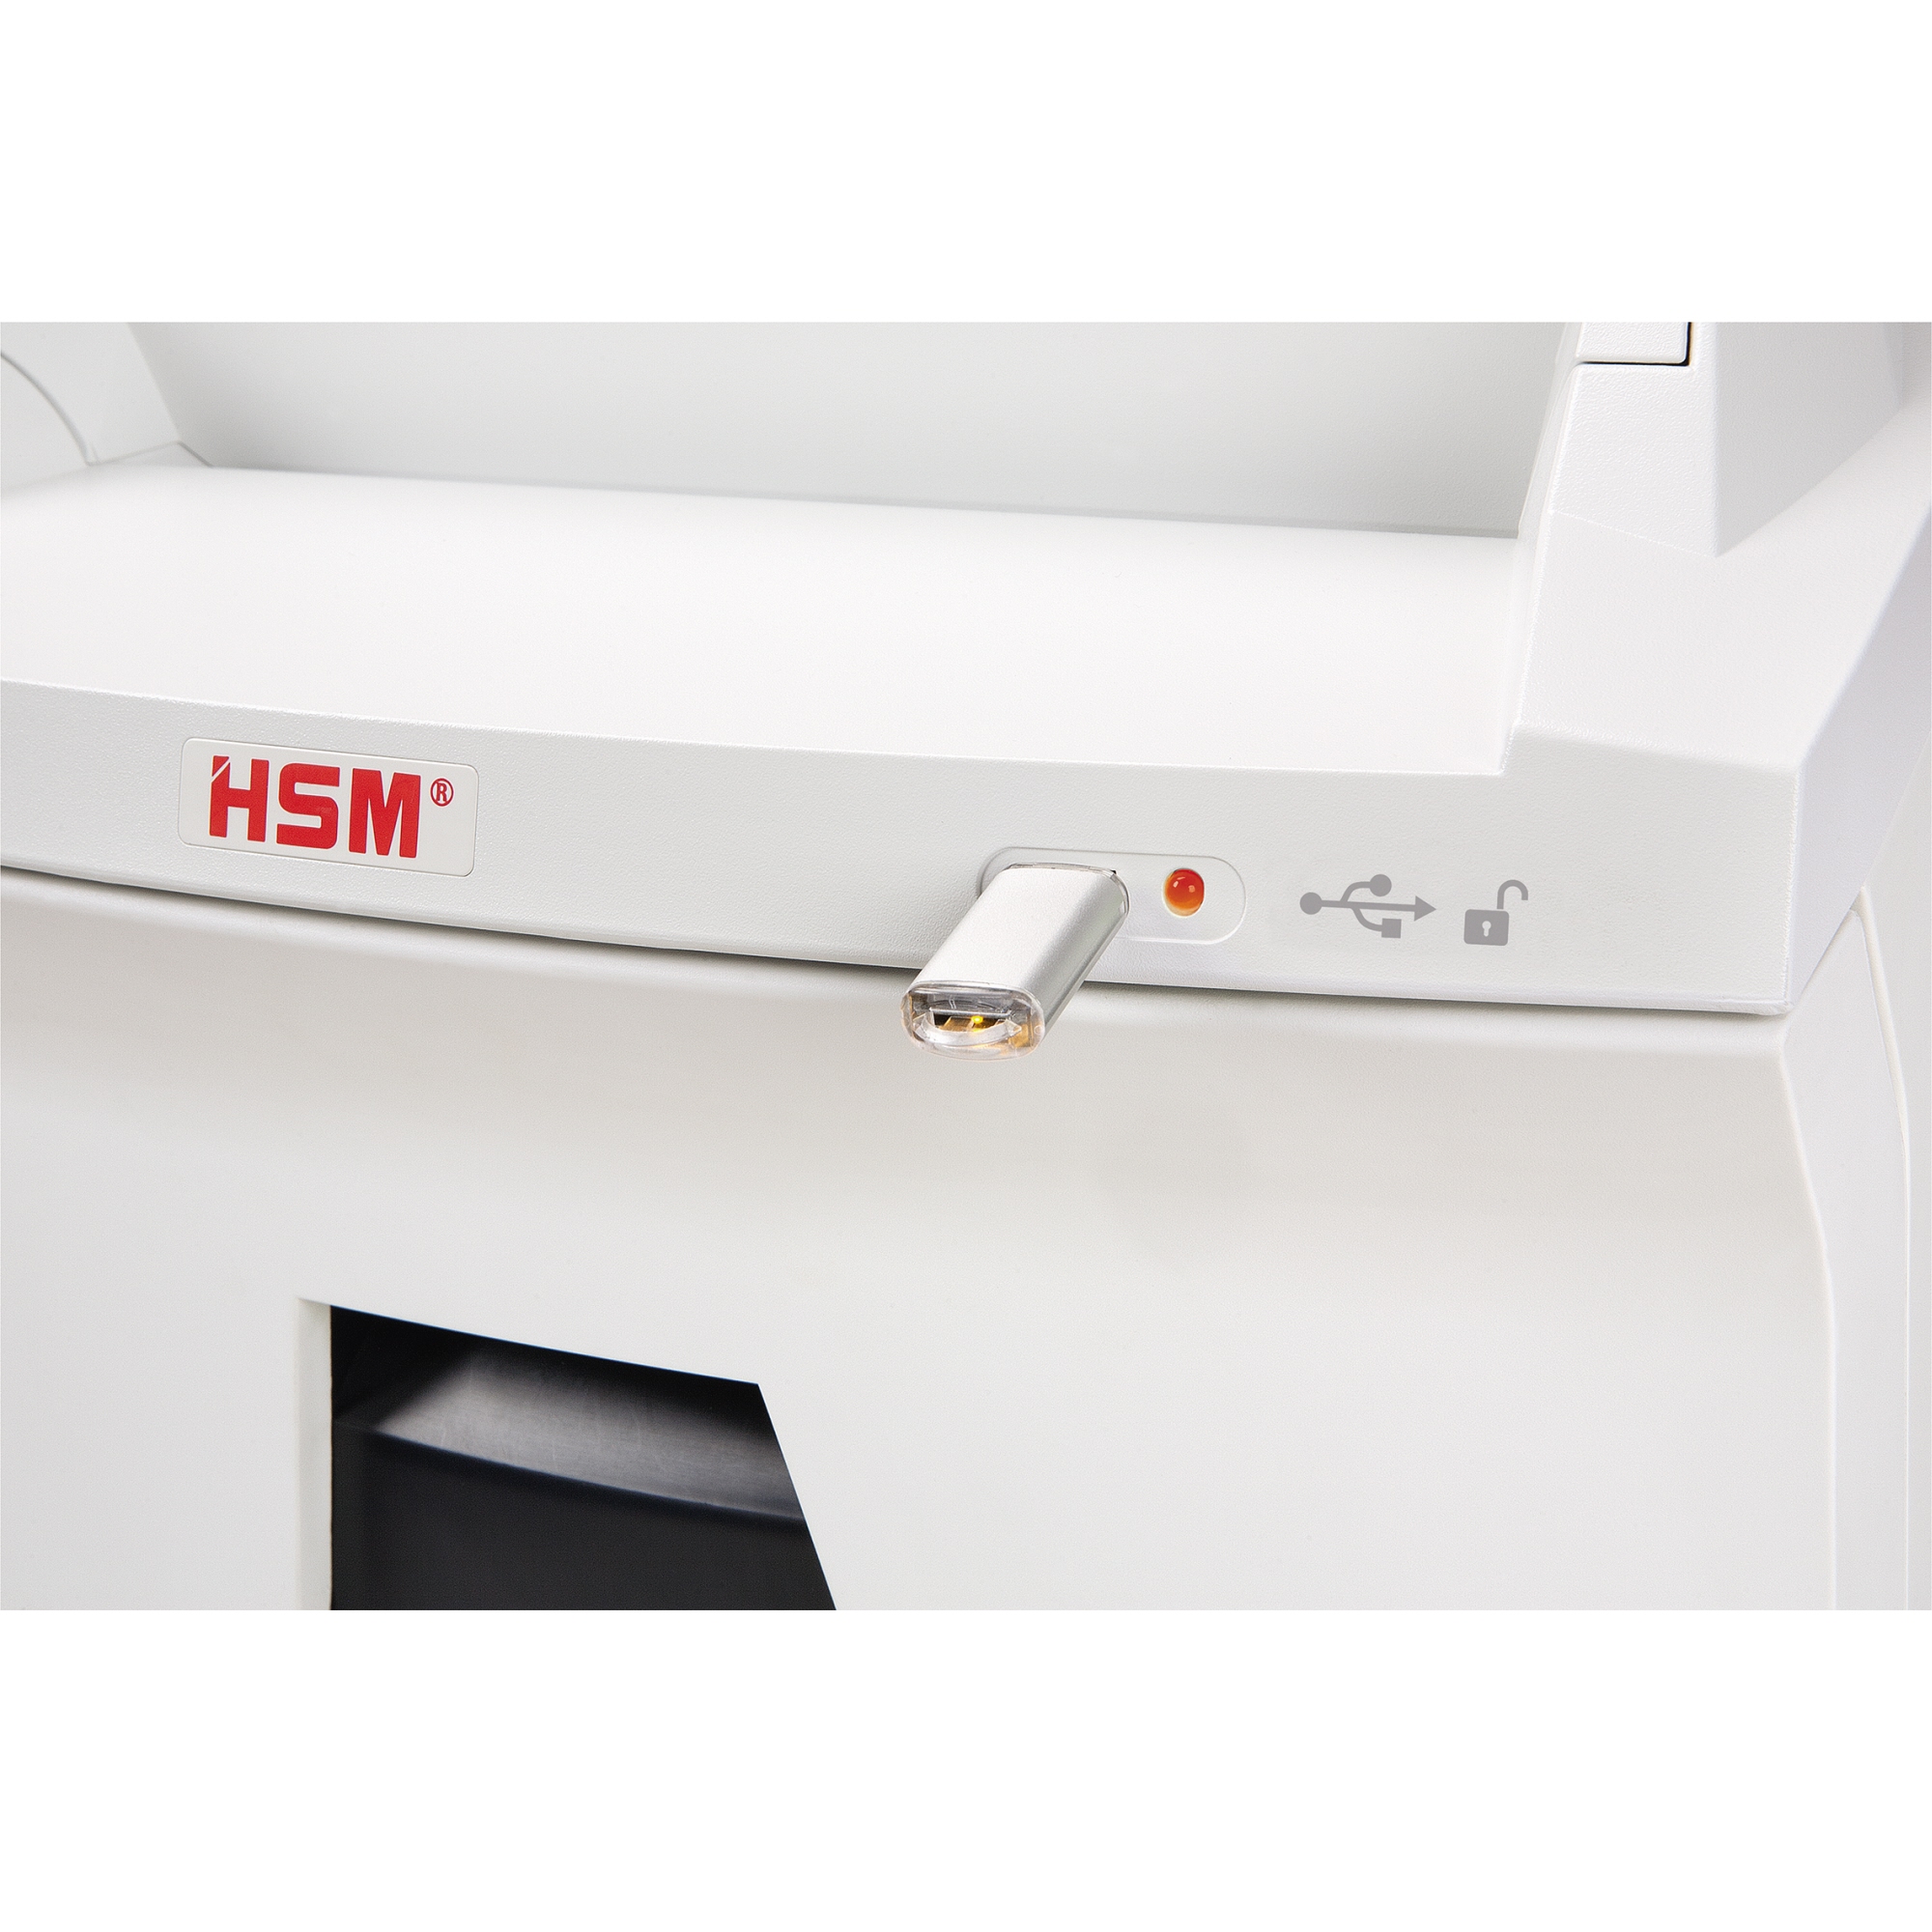 HSM® Aktenvernichter Autofeed AF350 CC 1,9x15mm weiß